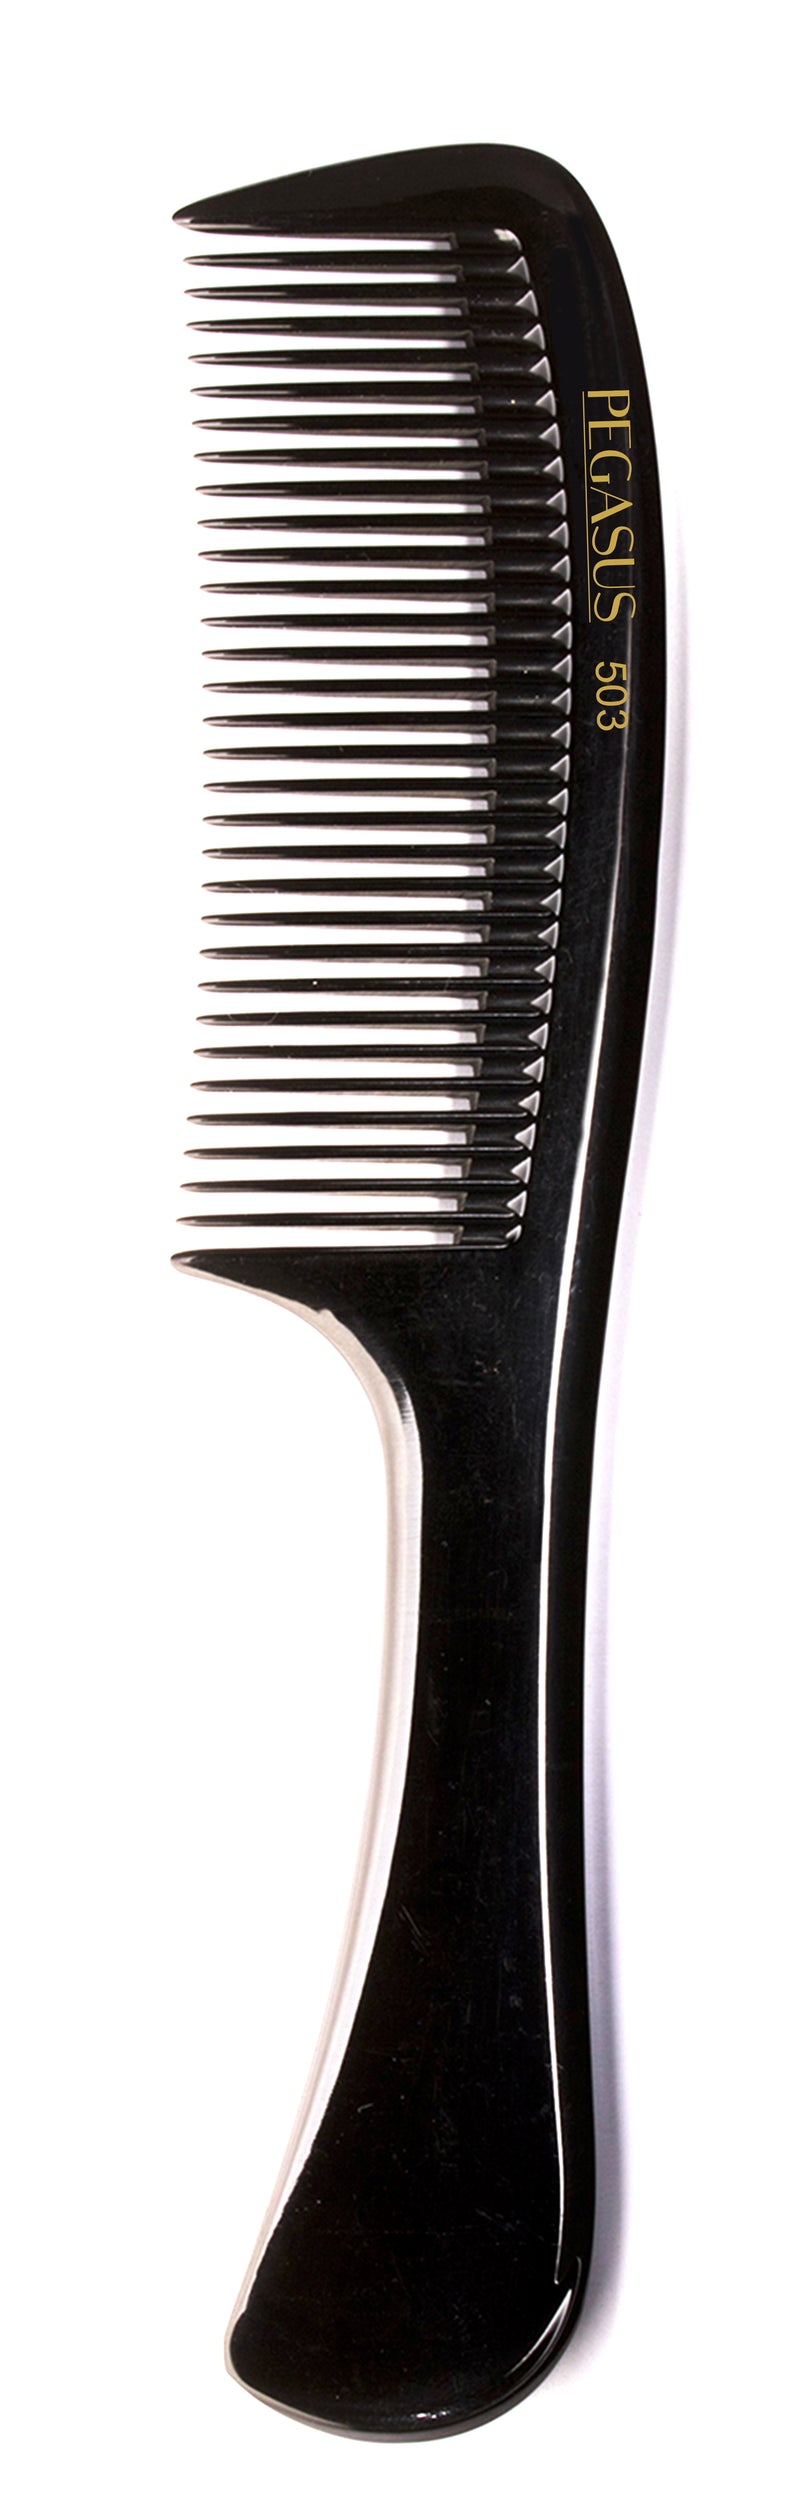 Pegasus Hard Rubber Comb (503) 8.5" Handle Comb